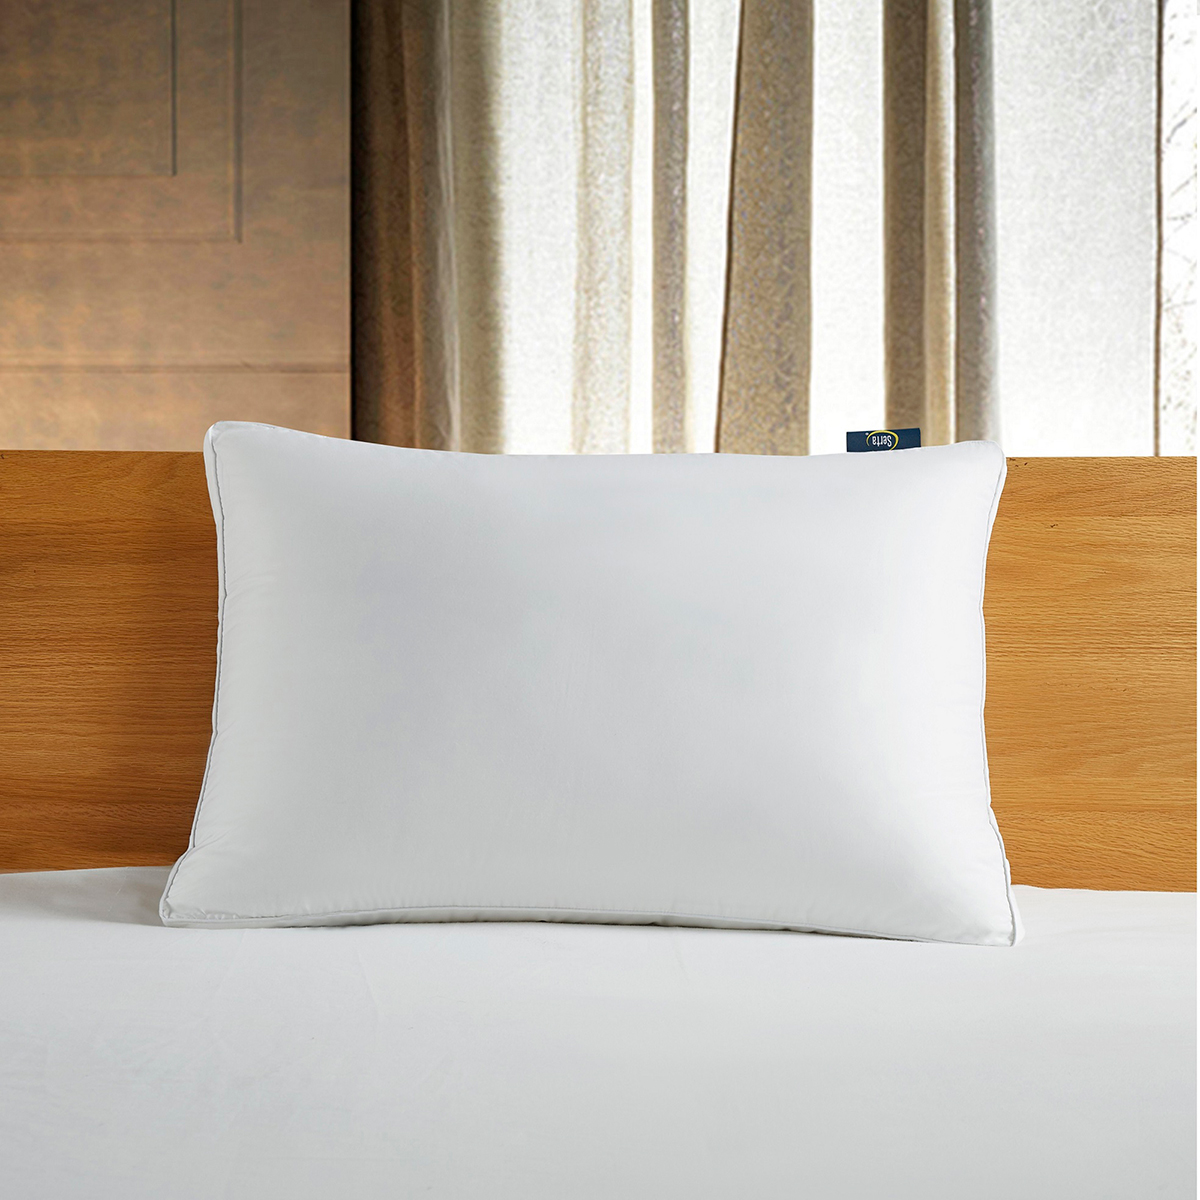 Open Video Modal for Serta(R) 300 TC White Down Fiber Side Sleeper Bed Pillow - Jumbo